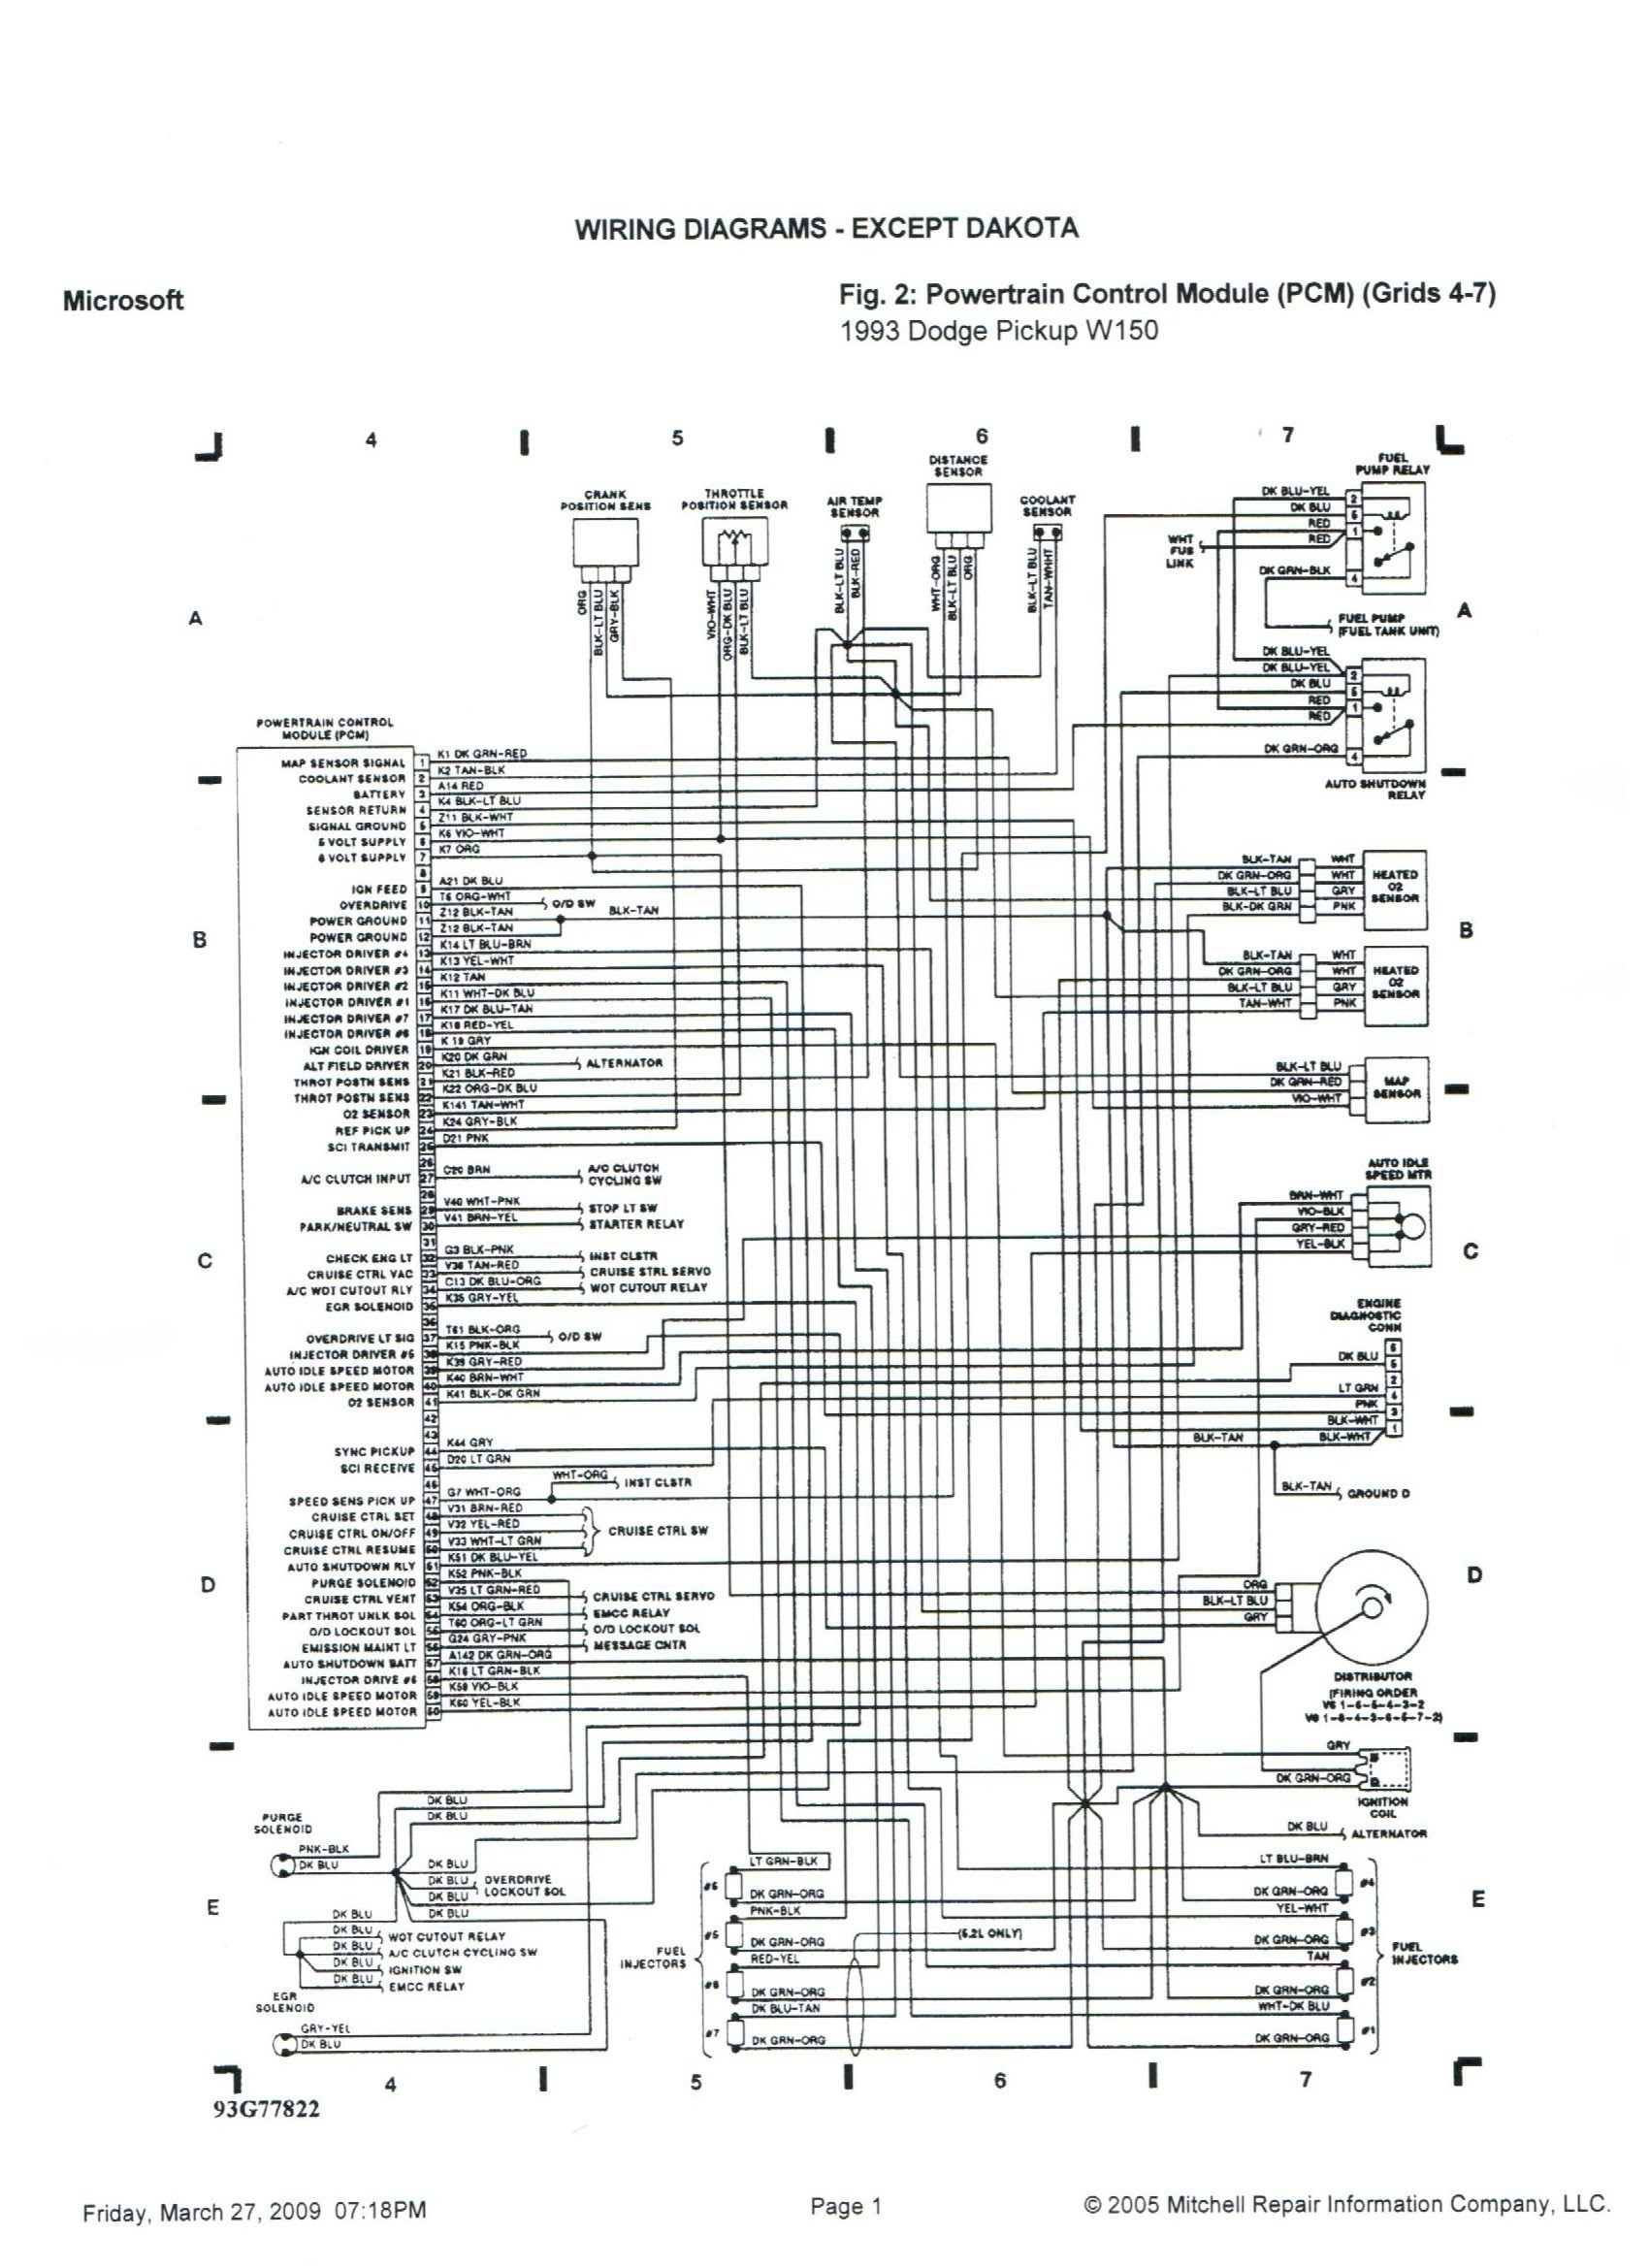 1998 Dodge Ram 1500 Wiring Schematic Free Wiring Diagram